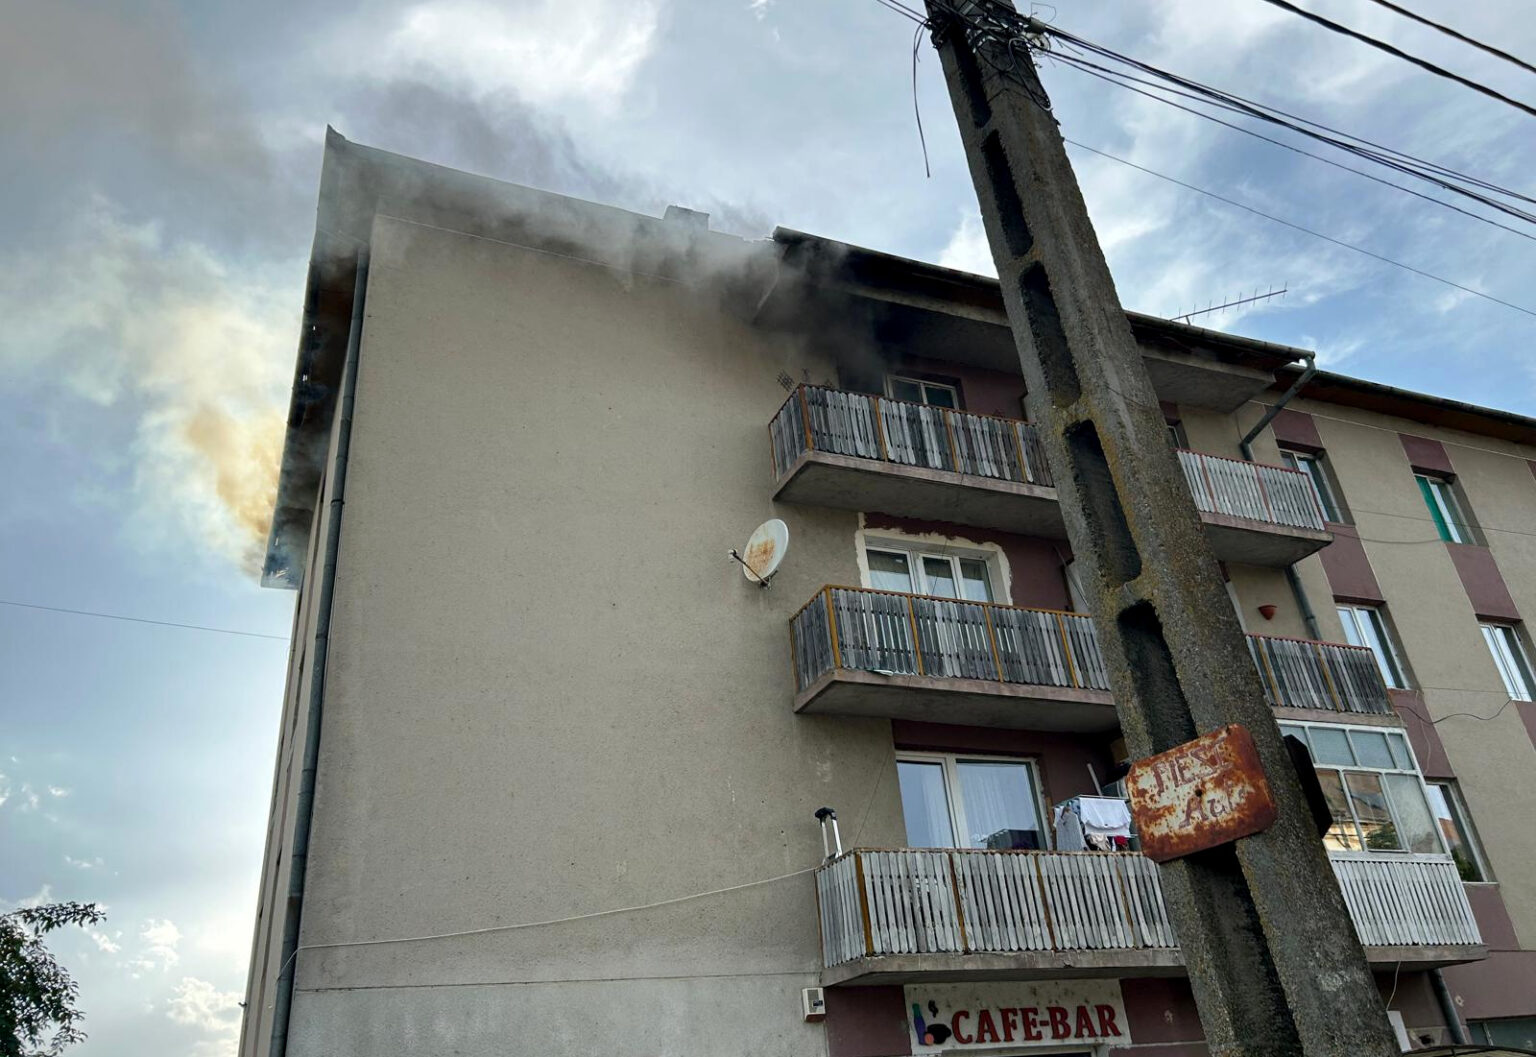 Incendiu la un bloc de locuințe din Alba. Bărbat cu arsuri, transportat la spital. Zeci de persoane evacuate|Foto: Mesageruldealba.ro